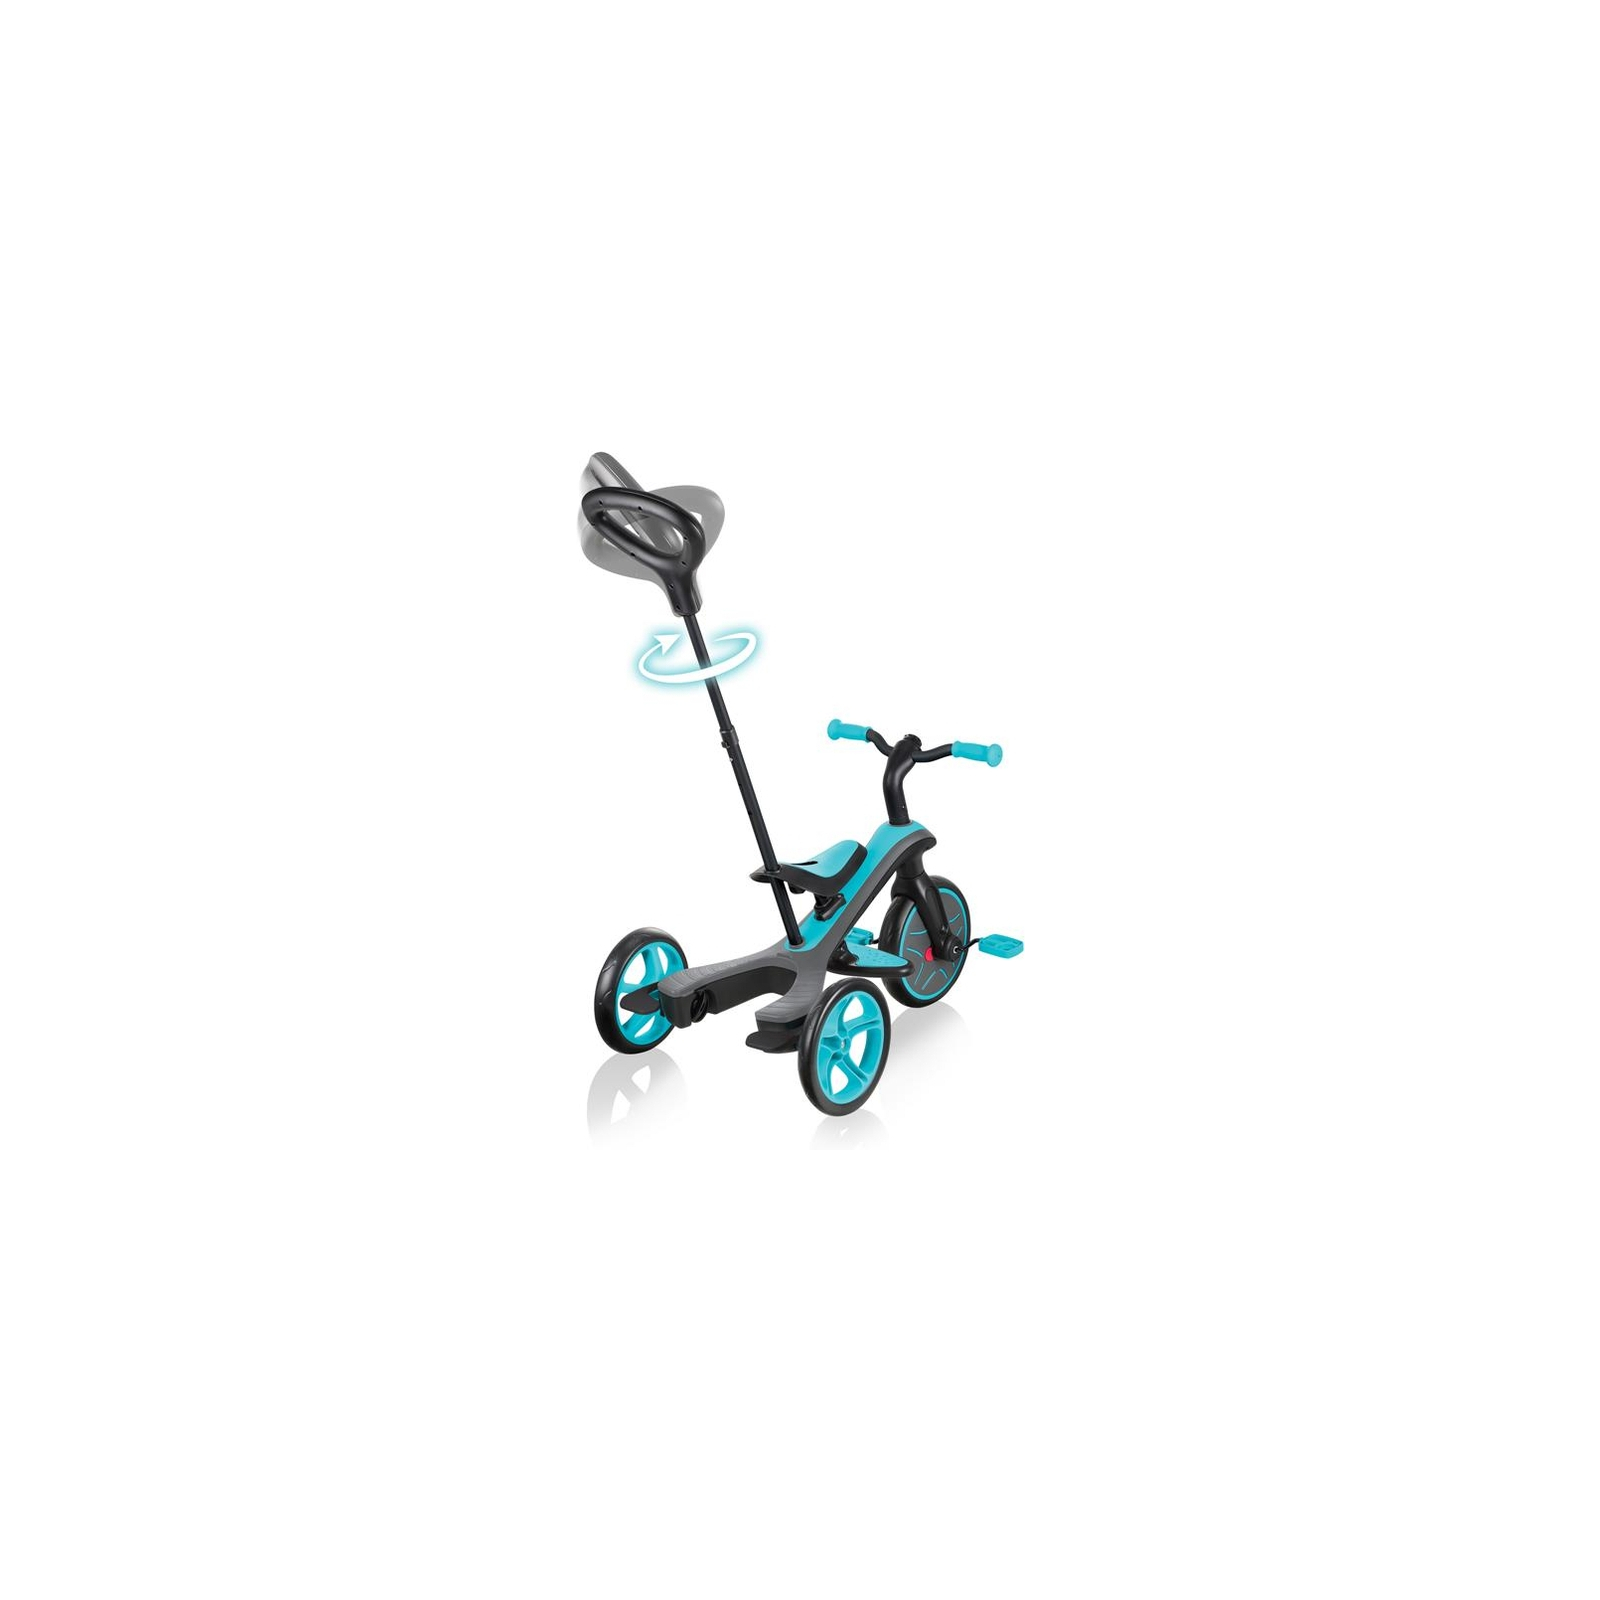 Детский велосипед Globber 4 в 1 Explorer Trike Teal Turquoise (632-105-3) изображение 3